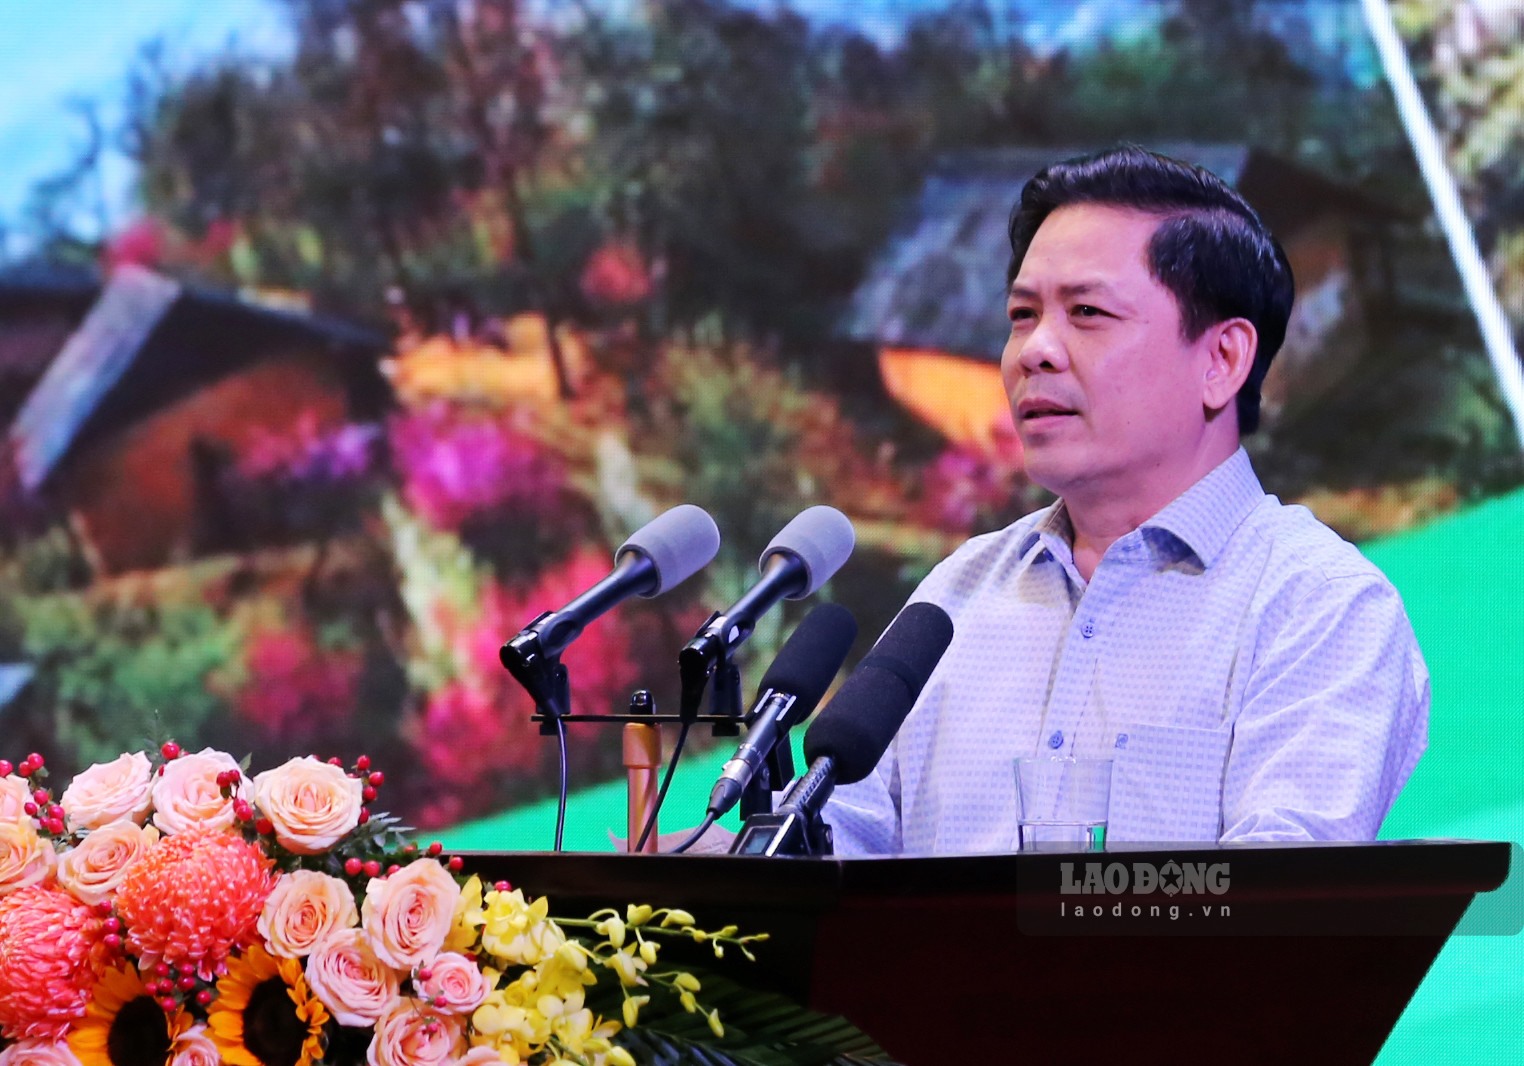 Bộ trưởng Bộ Giao thông Vận tải - Nguyễn Văn Thể xác định hạ tầng giao thông sẽ là đòn bẩy để phát triển vùng trung du, miền núi Bắc Bộ.